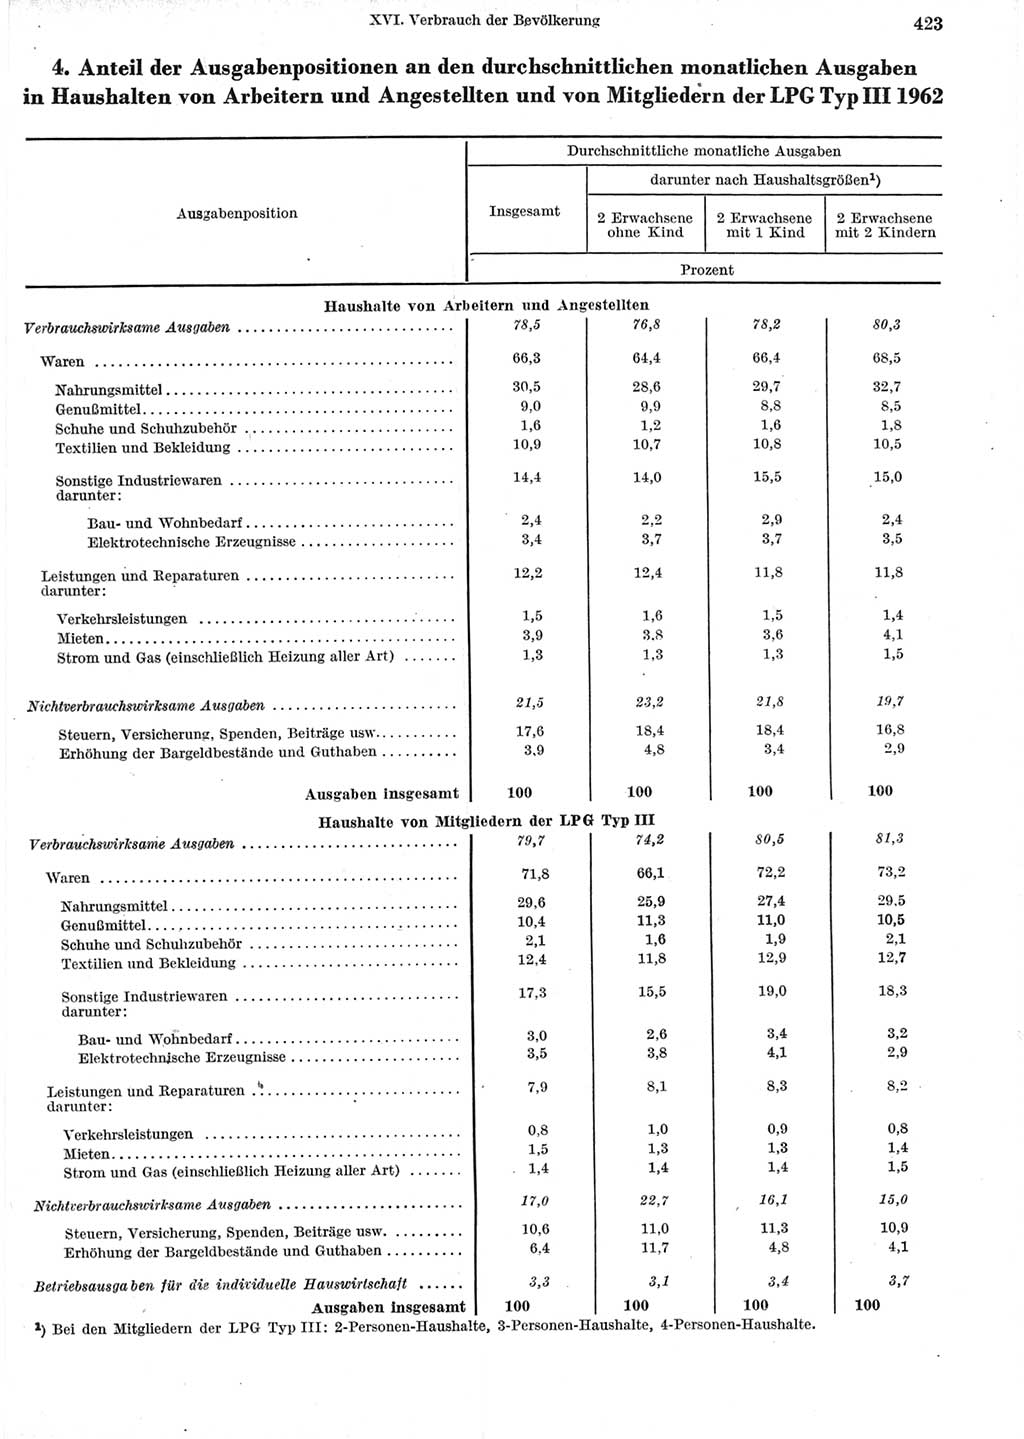 Statistisches Jahrbuch der Deutschen Demokratischen Republik (DDR) 1964, Seite 423 (Stat. Jb. DDR 1964, S. 423)